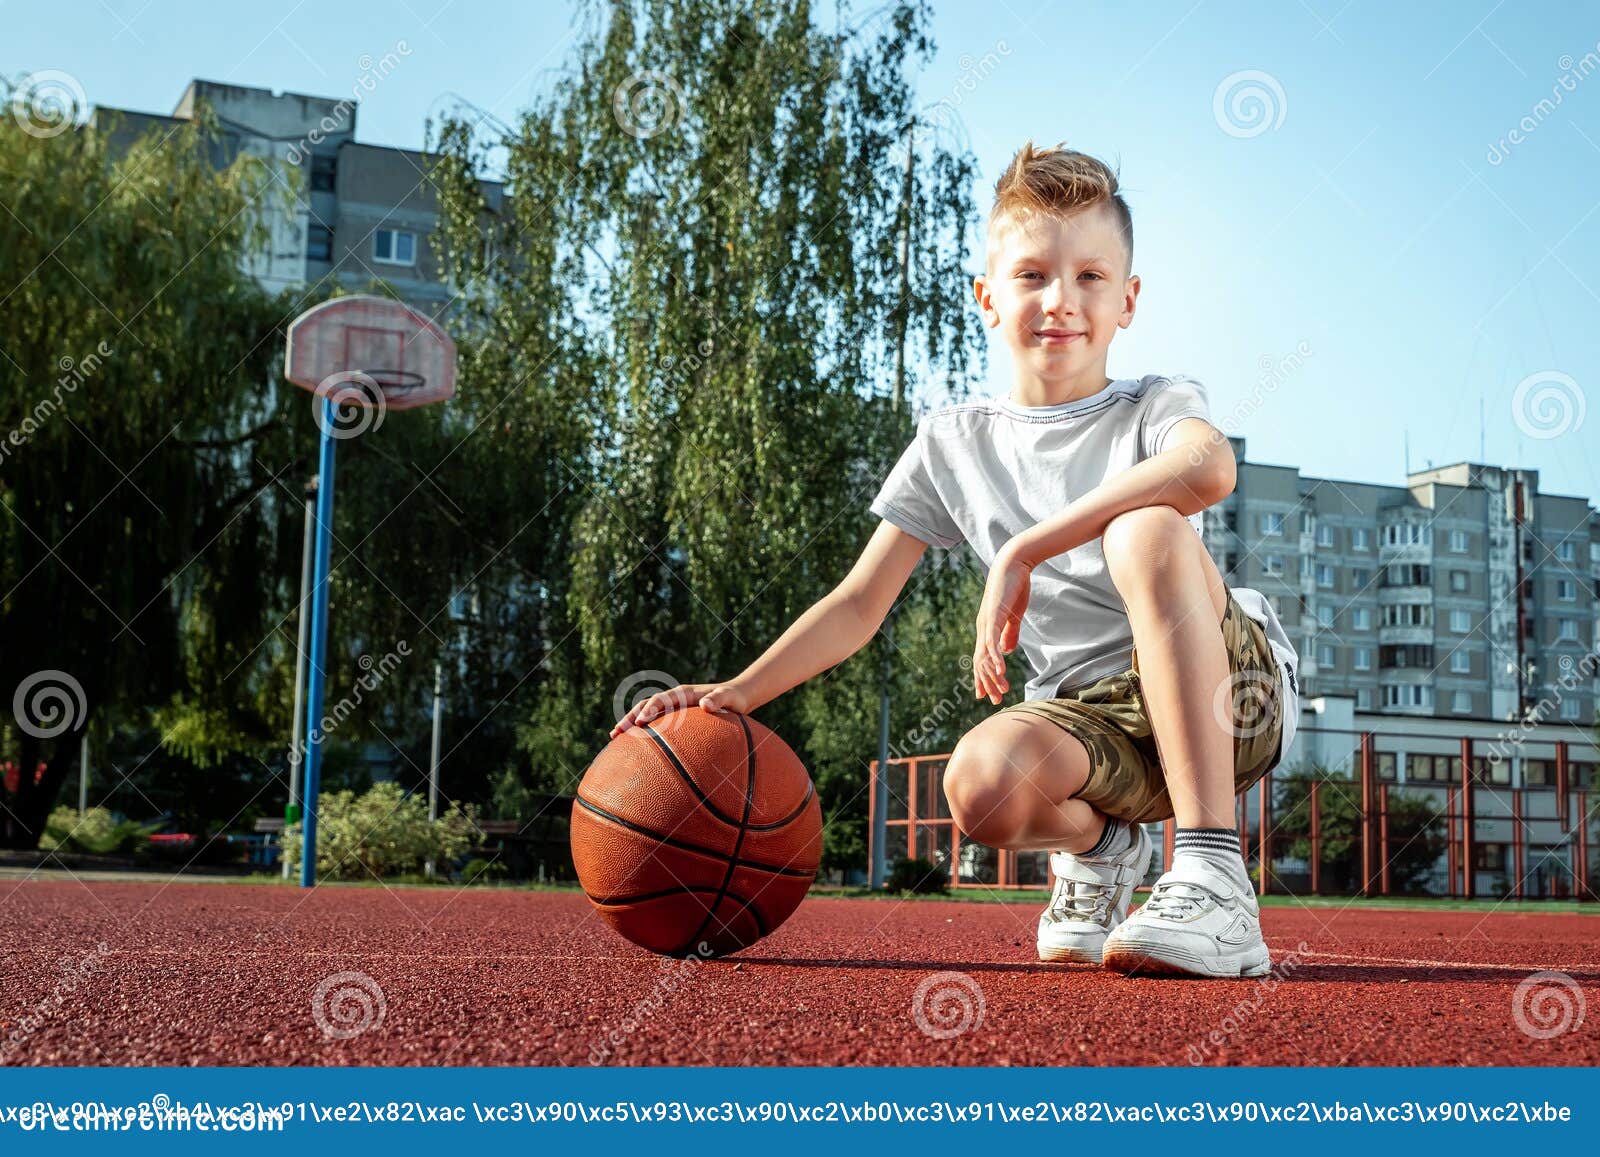 Retrato De Un NiÃ±o Con Baloncesto En Una Cancha De Baloncesto. El Concepto  De Estilo De Vida Deportivo, FormaciÃ³n, Deporte, Ocio Foto de archivo -  Imagen de baloncesto, concepto: 156729892